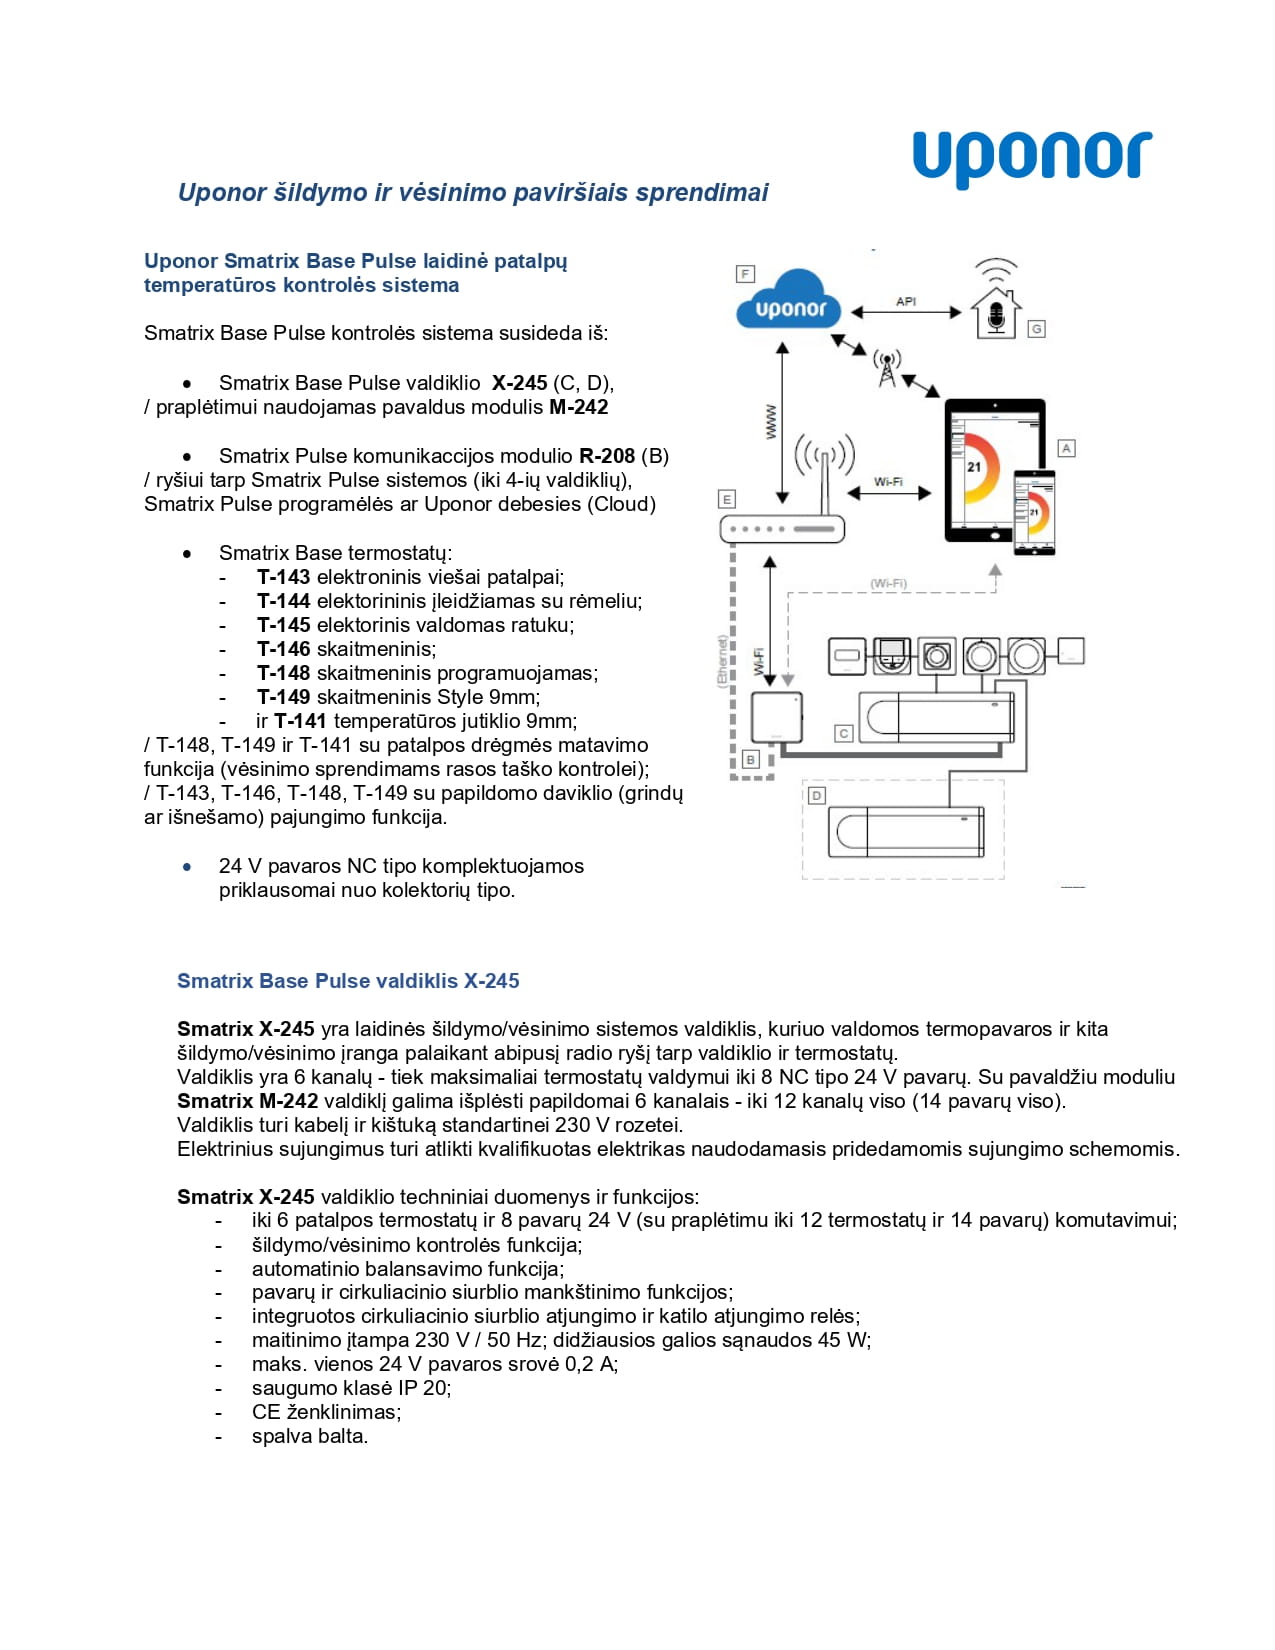 Uponor šildymo ir vėsinimo paviršiais sprendimai su Uponor Smatrix Base Pulse laidine patalpų temperatūros kontrolės sistema